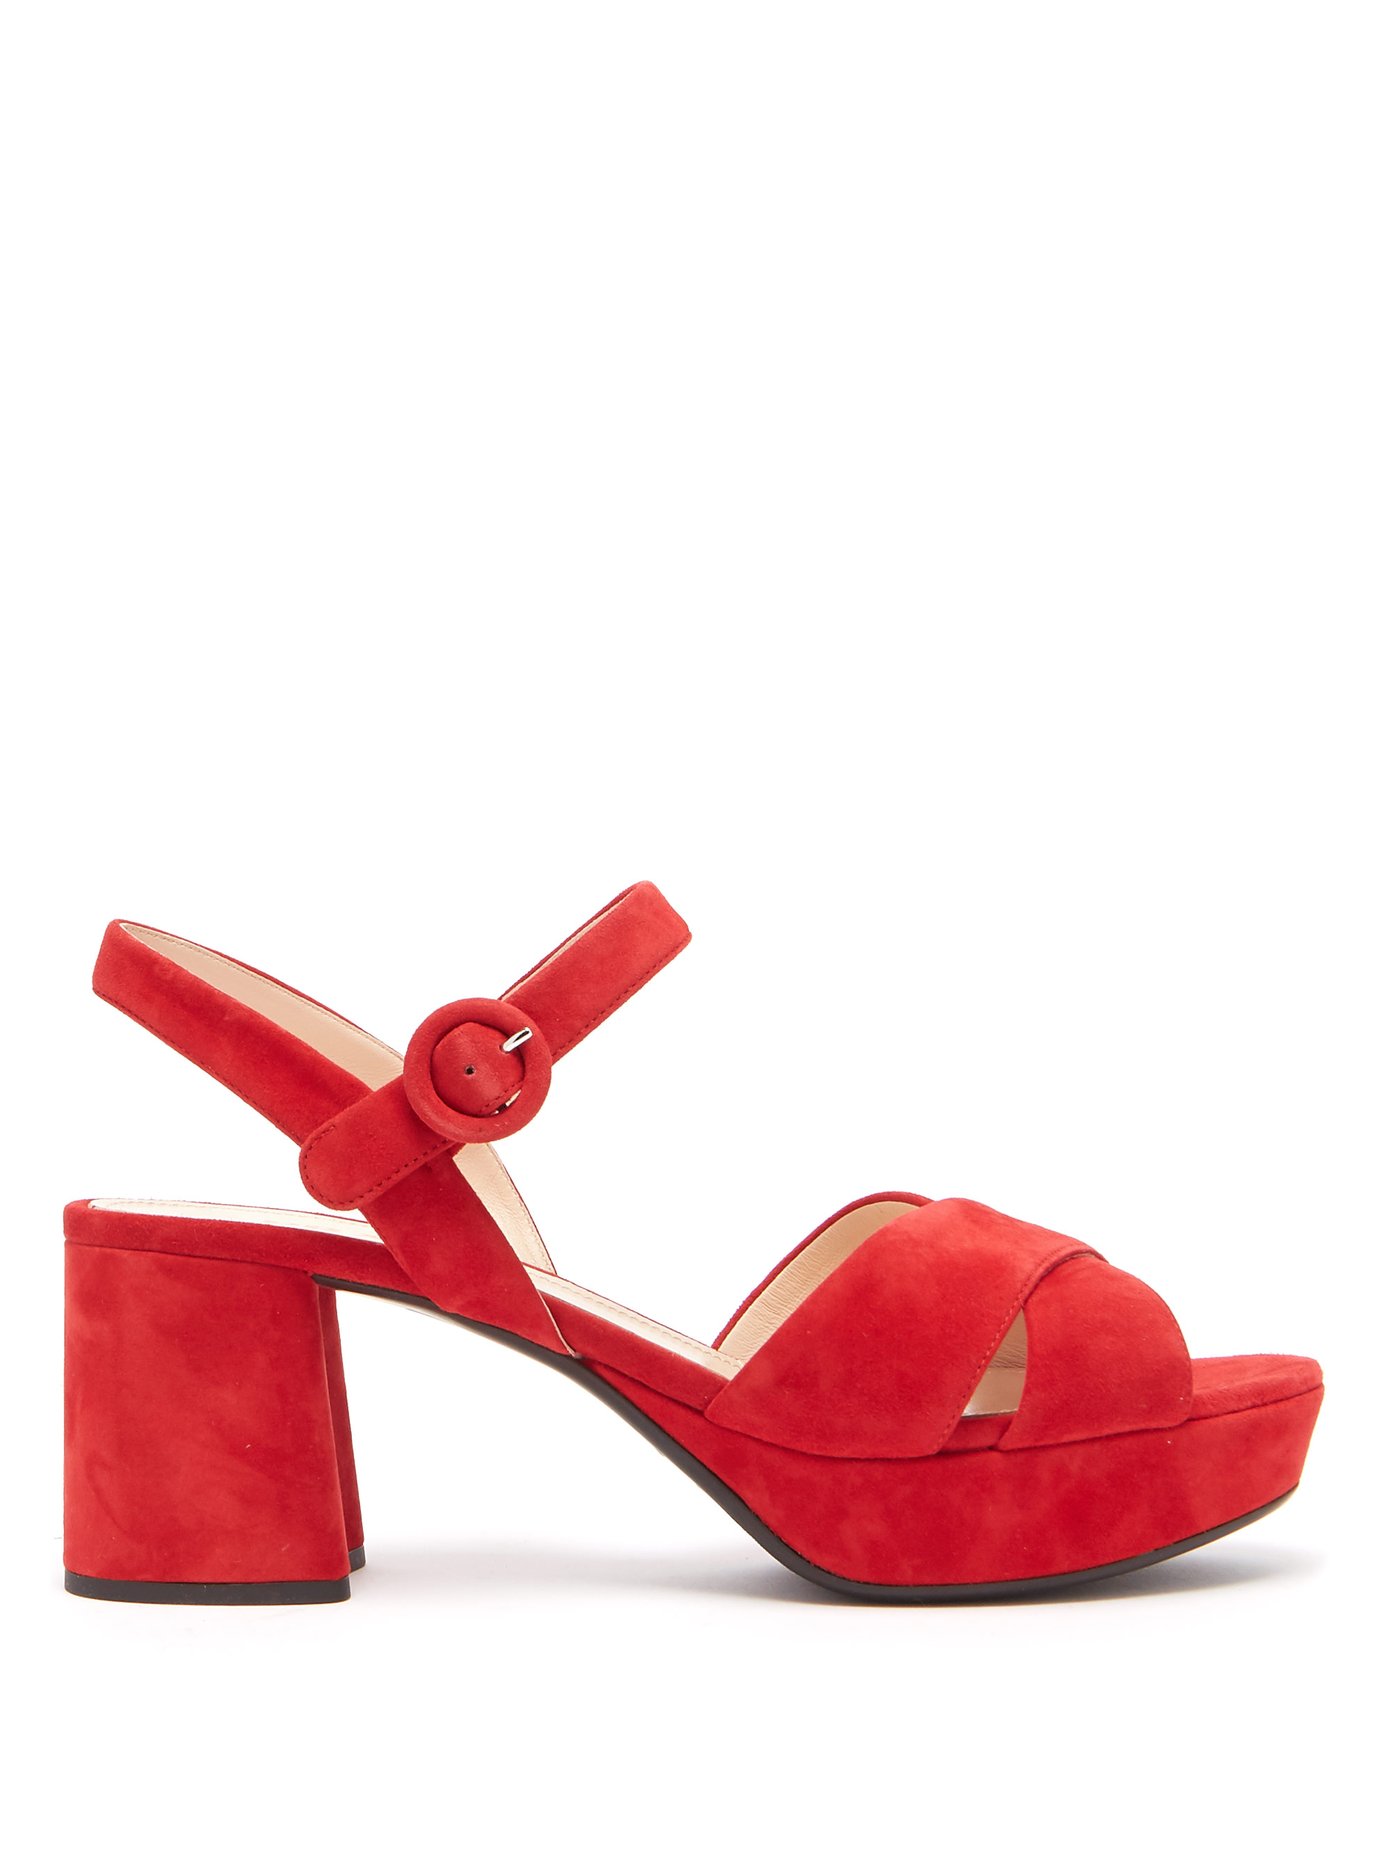 prada red sandals